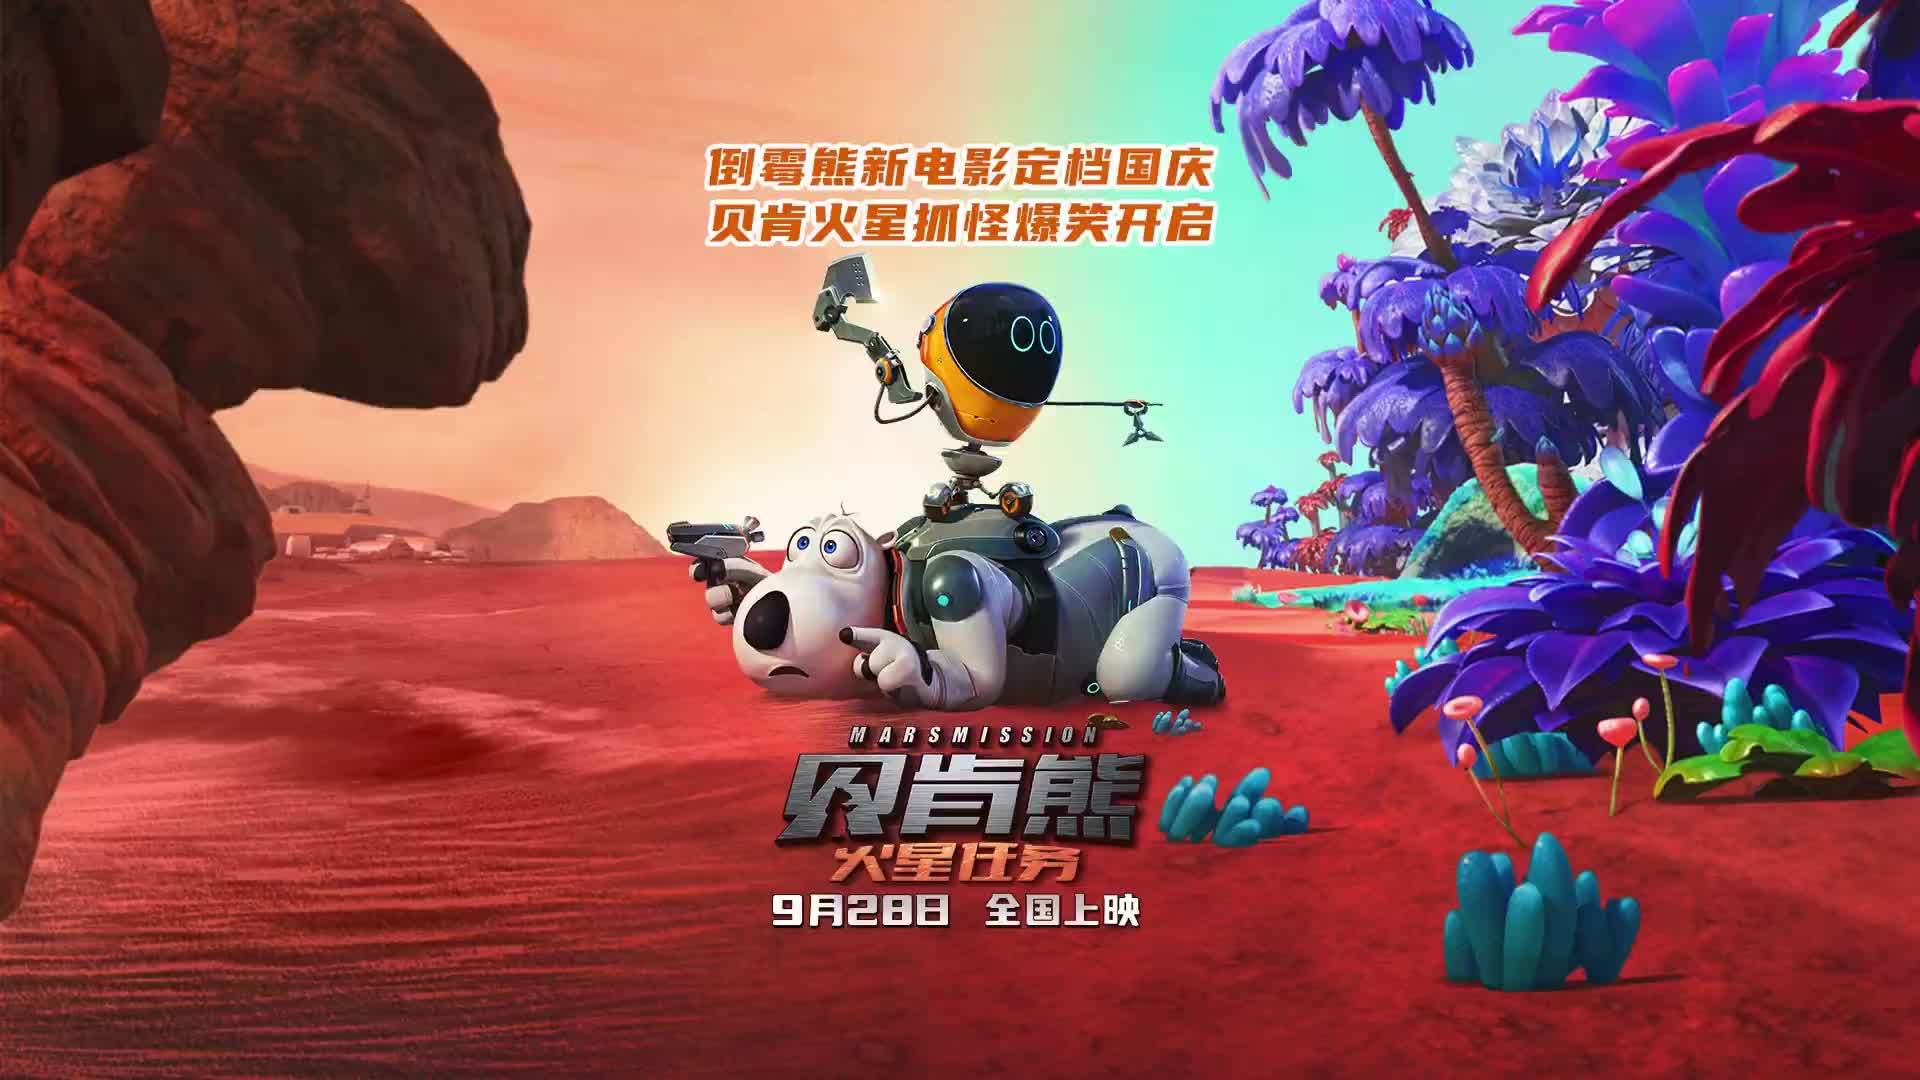 喜剧动画电影《贝肯熊：火星任务》定档9月28日国庆档上映